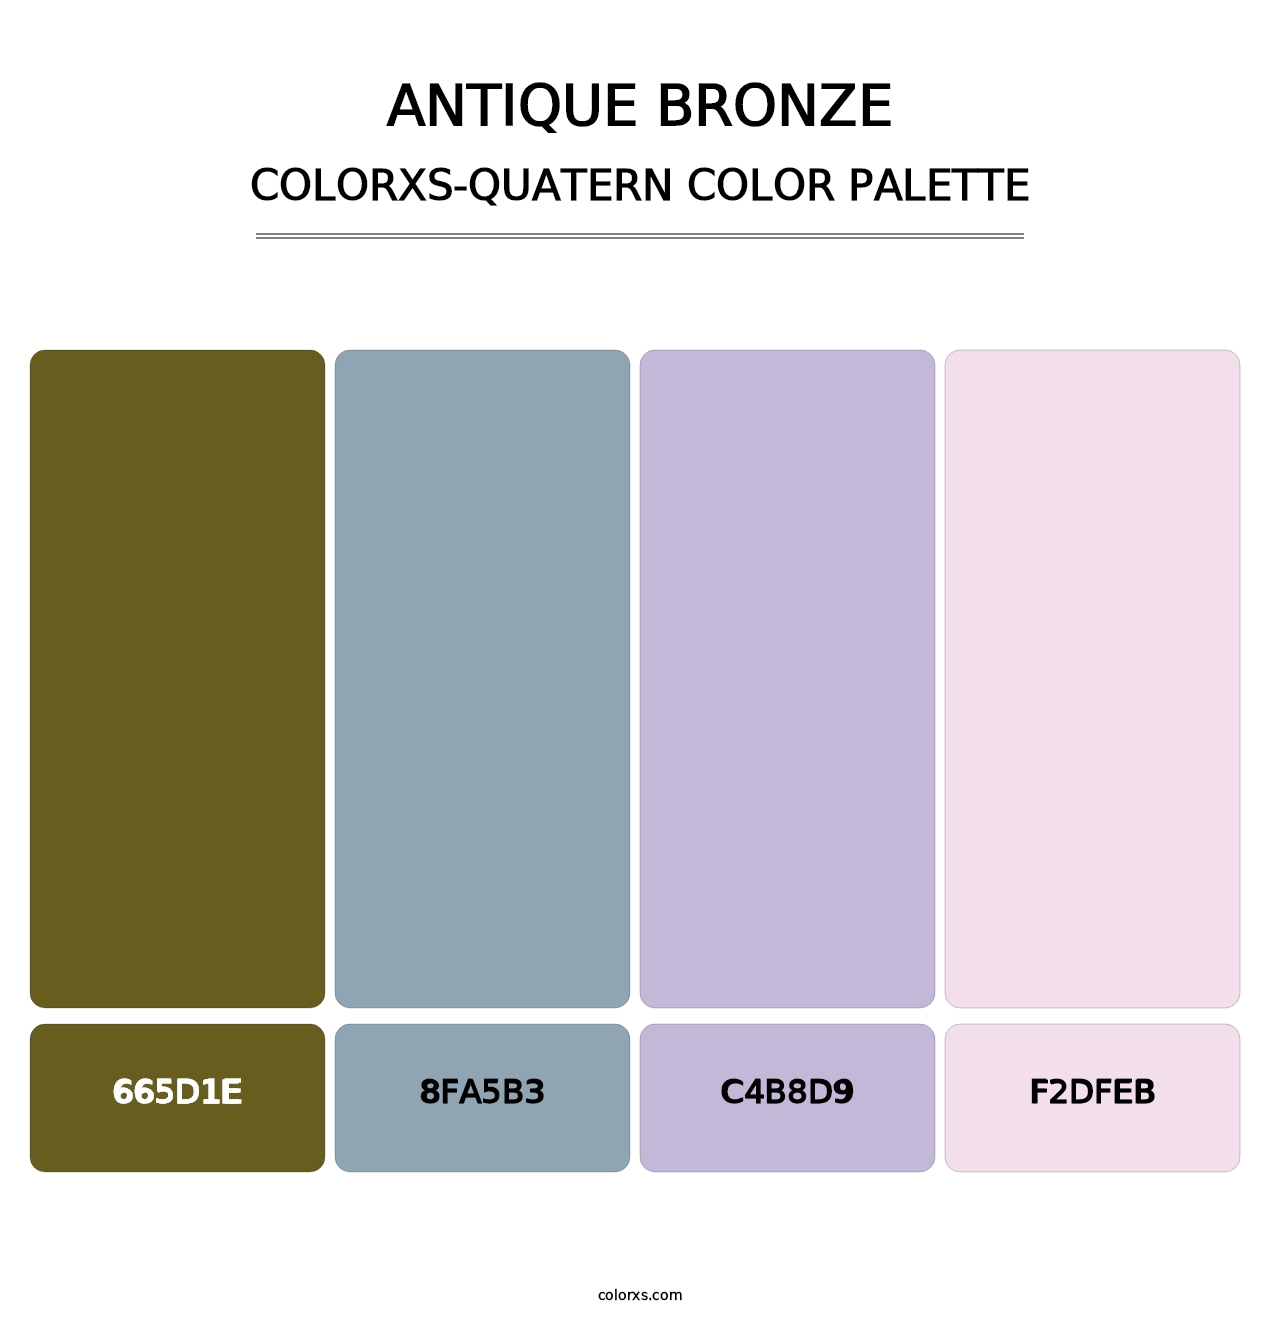 Antique Bronze - Colorxs Quatern Palette